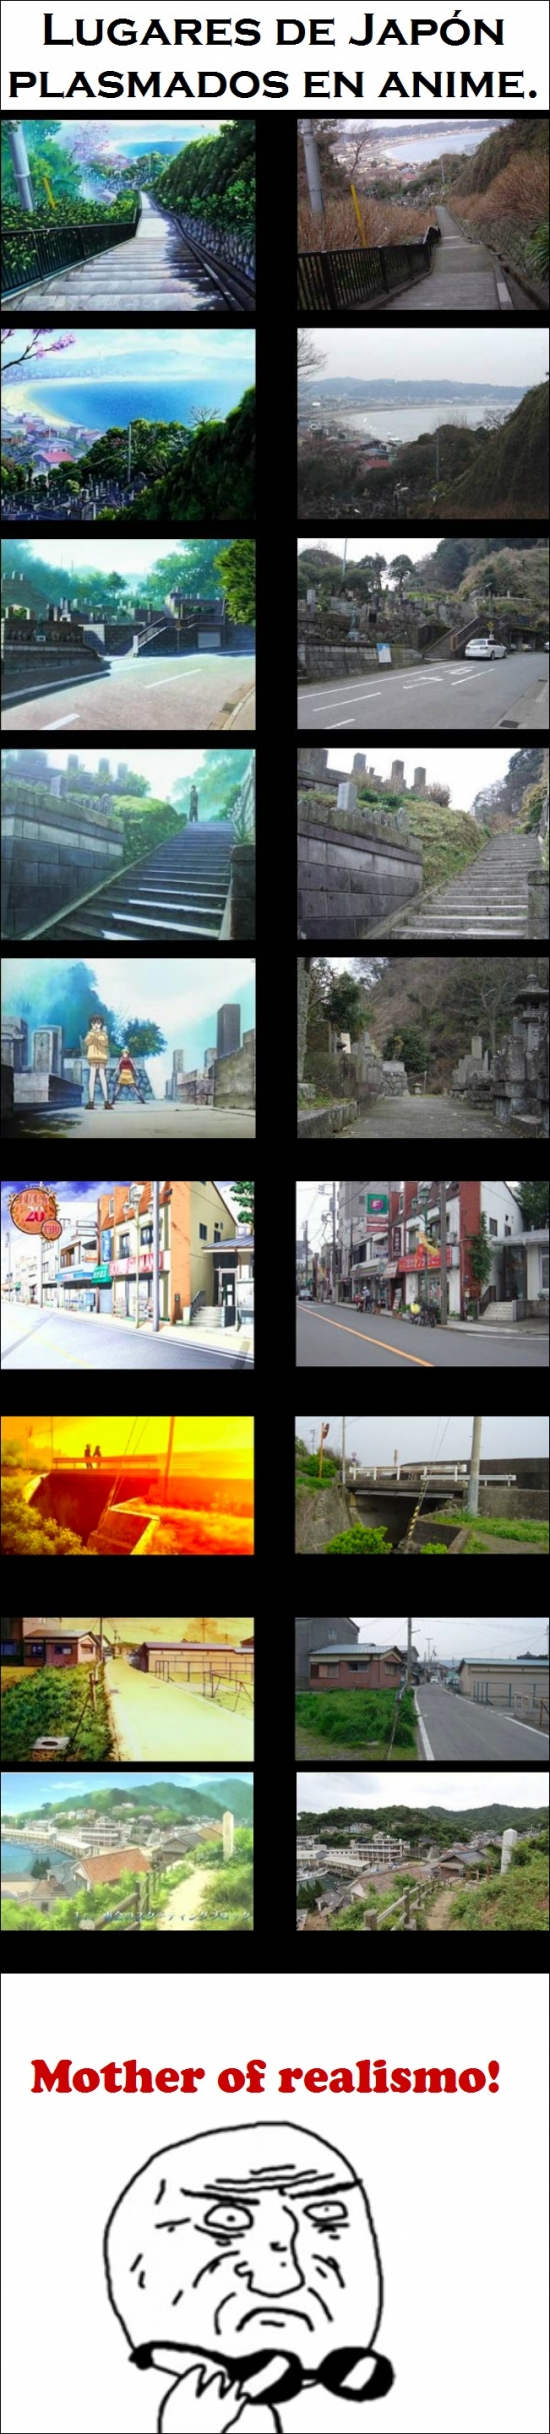 Mother_of_god - Lugares de Japón en anime, ¿ves las diferencias?